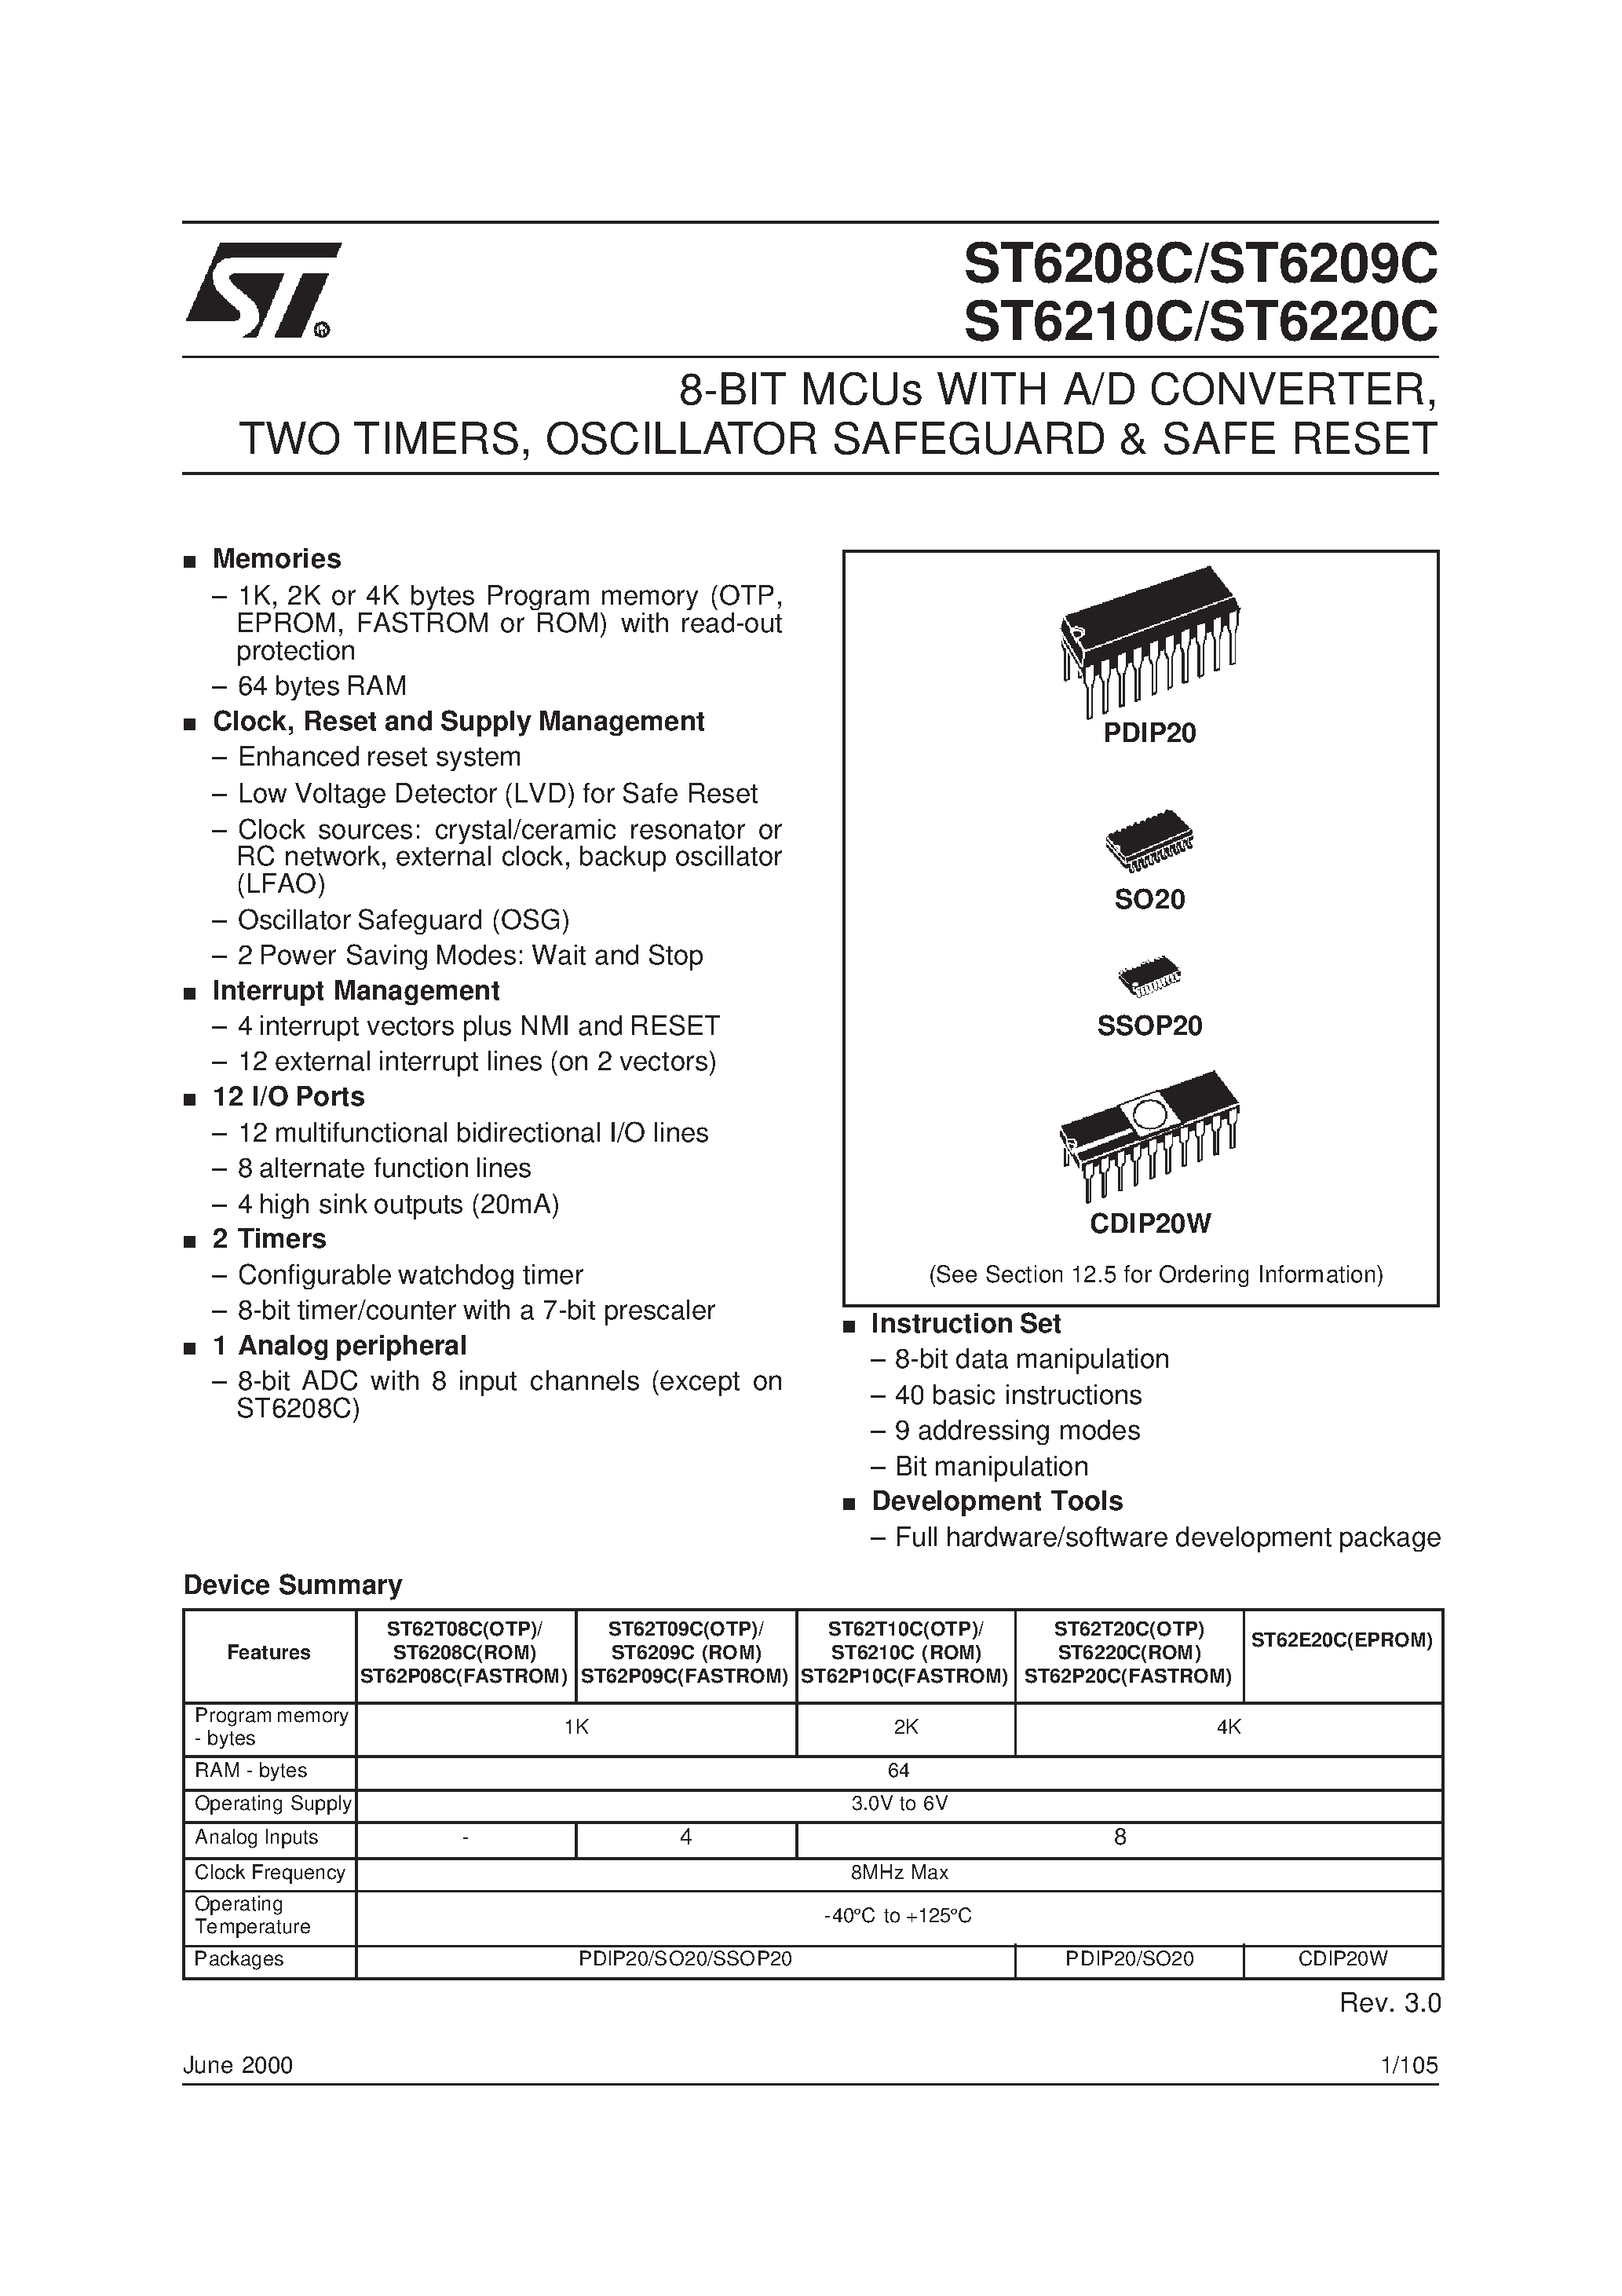 Datasheet ST6208C - (ST6208C - ST6220C) 8-BIT MCUs WITH A/D CONVERTER page 1